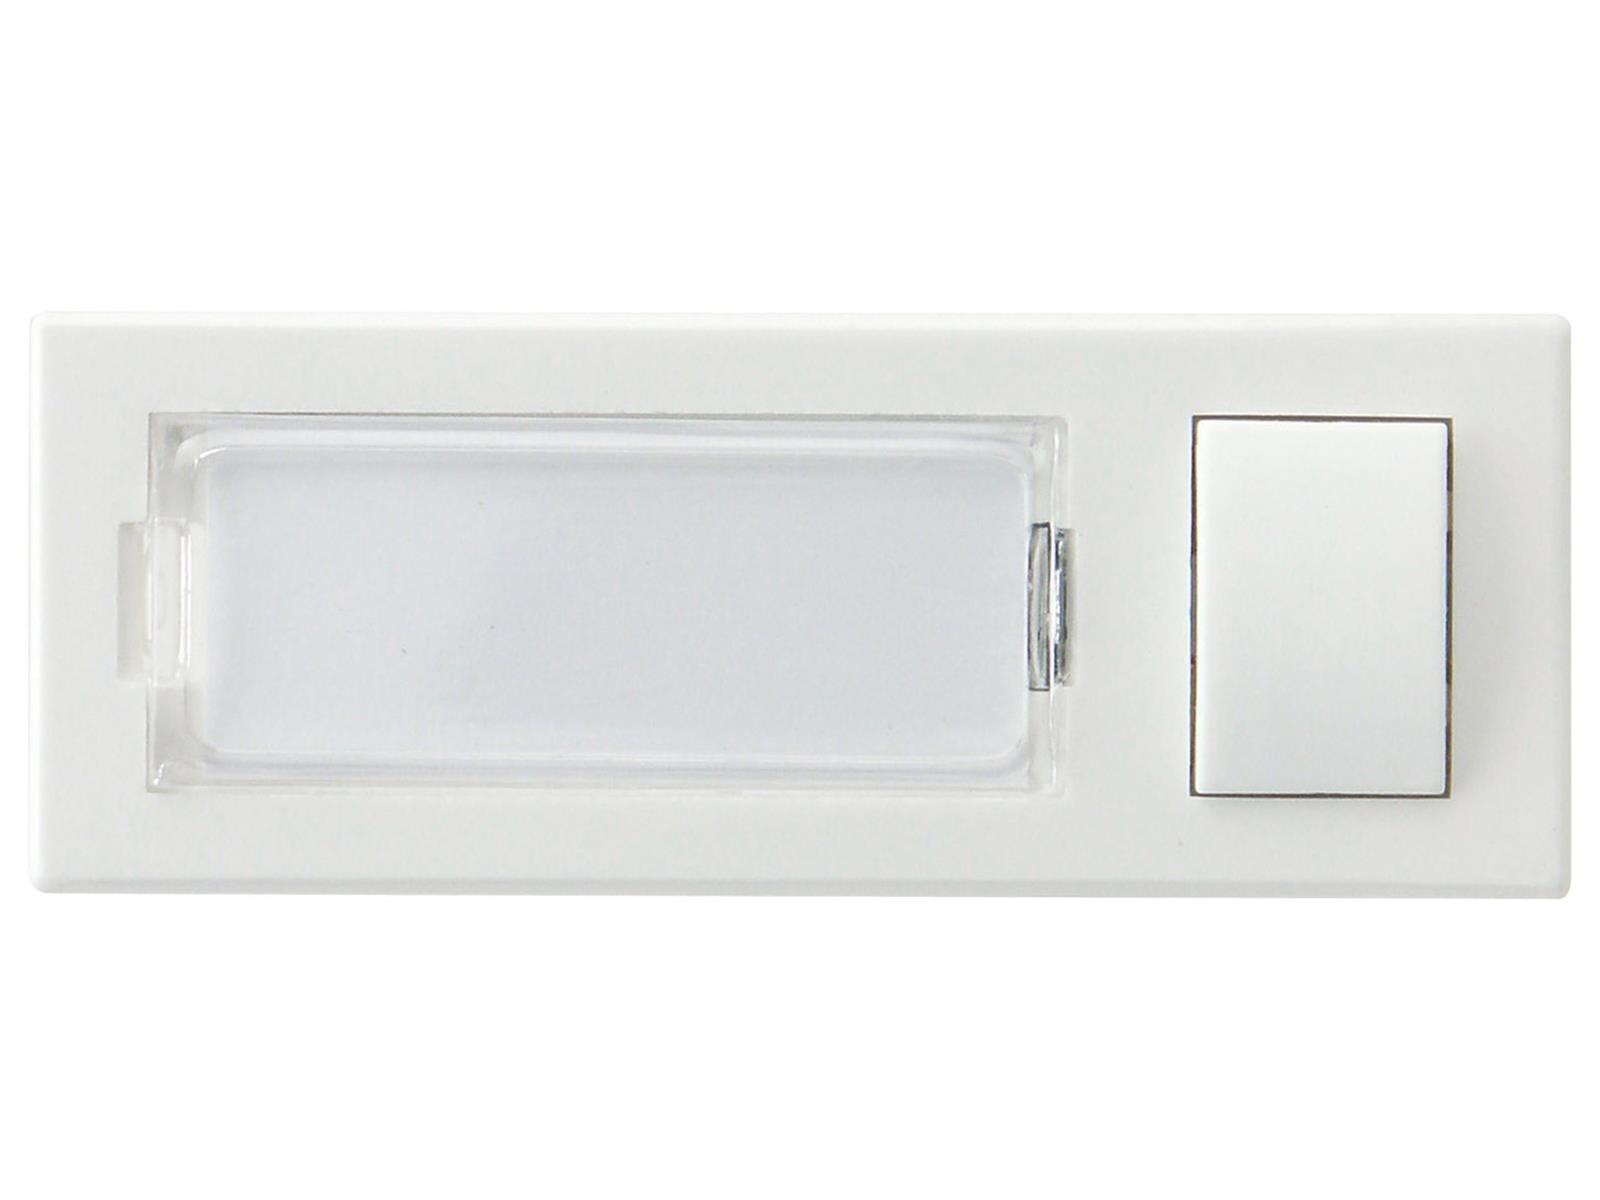 Klingeltaster mit Namensschild, weißKunststoff, 91x32x18mm